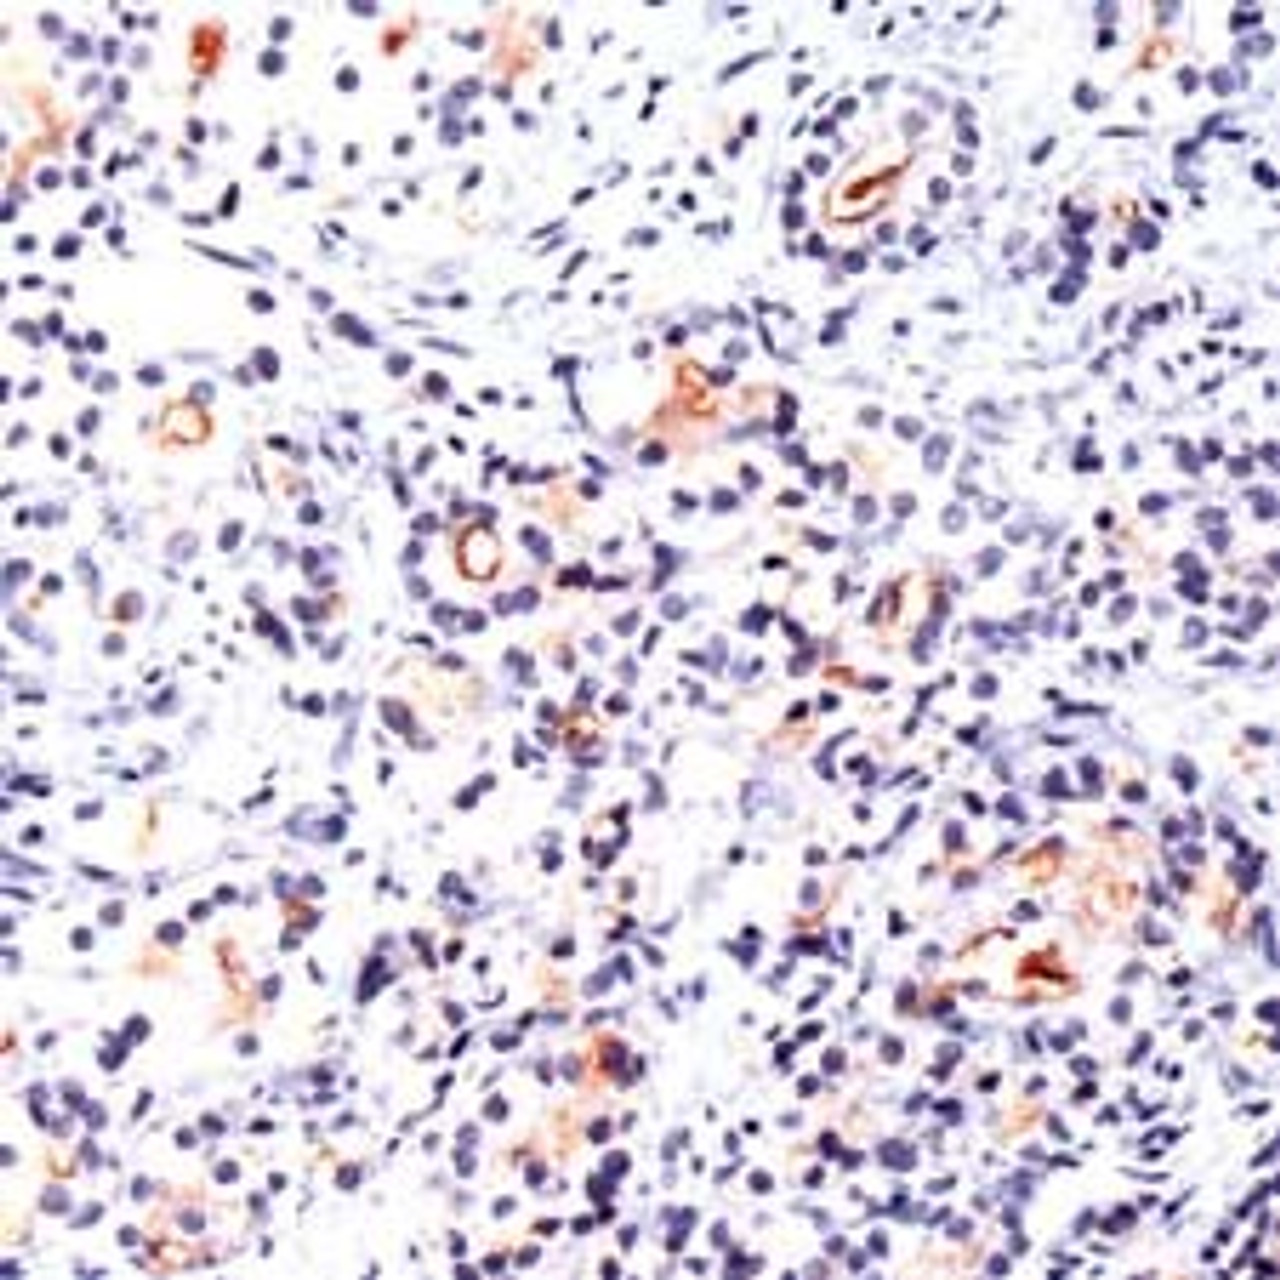 Immunohistochemistry staining of FOLH1 in human prostate carcinoma tissue using FOLH1 Antibody.